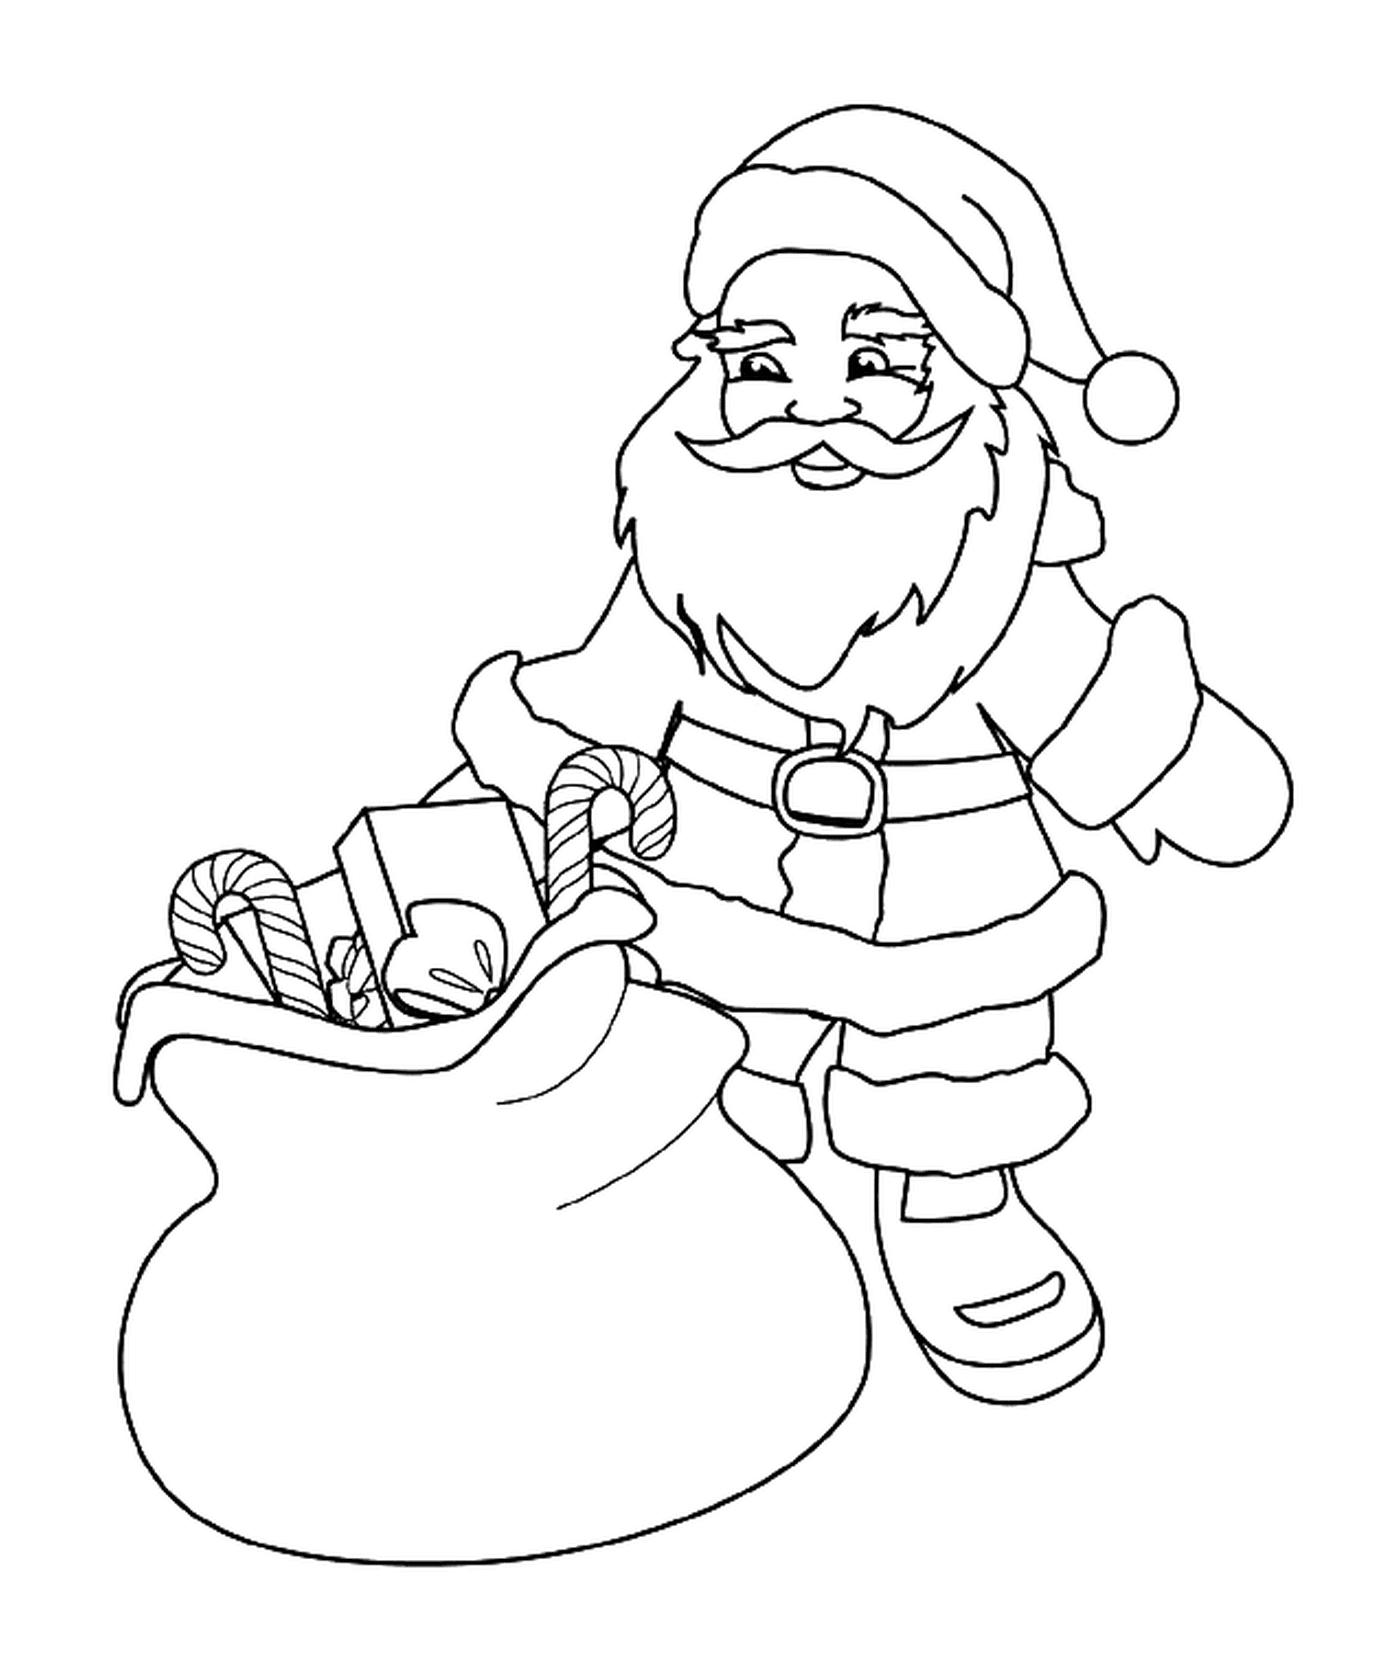  Санта со своей сумкой игрушек и угощением 